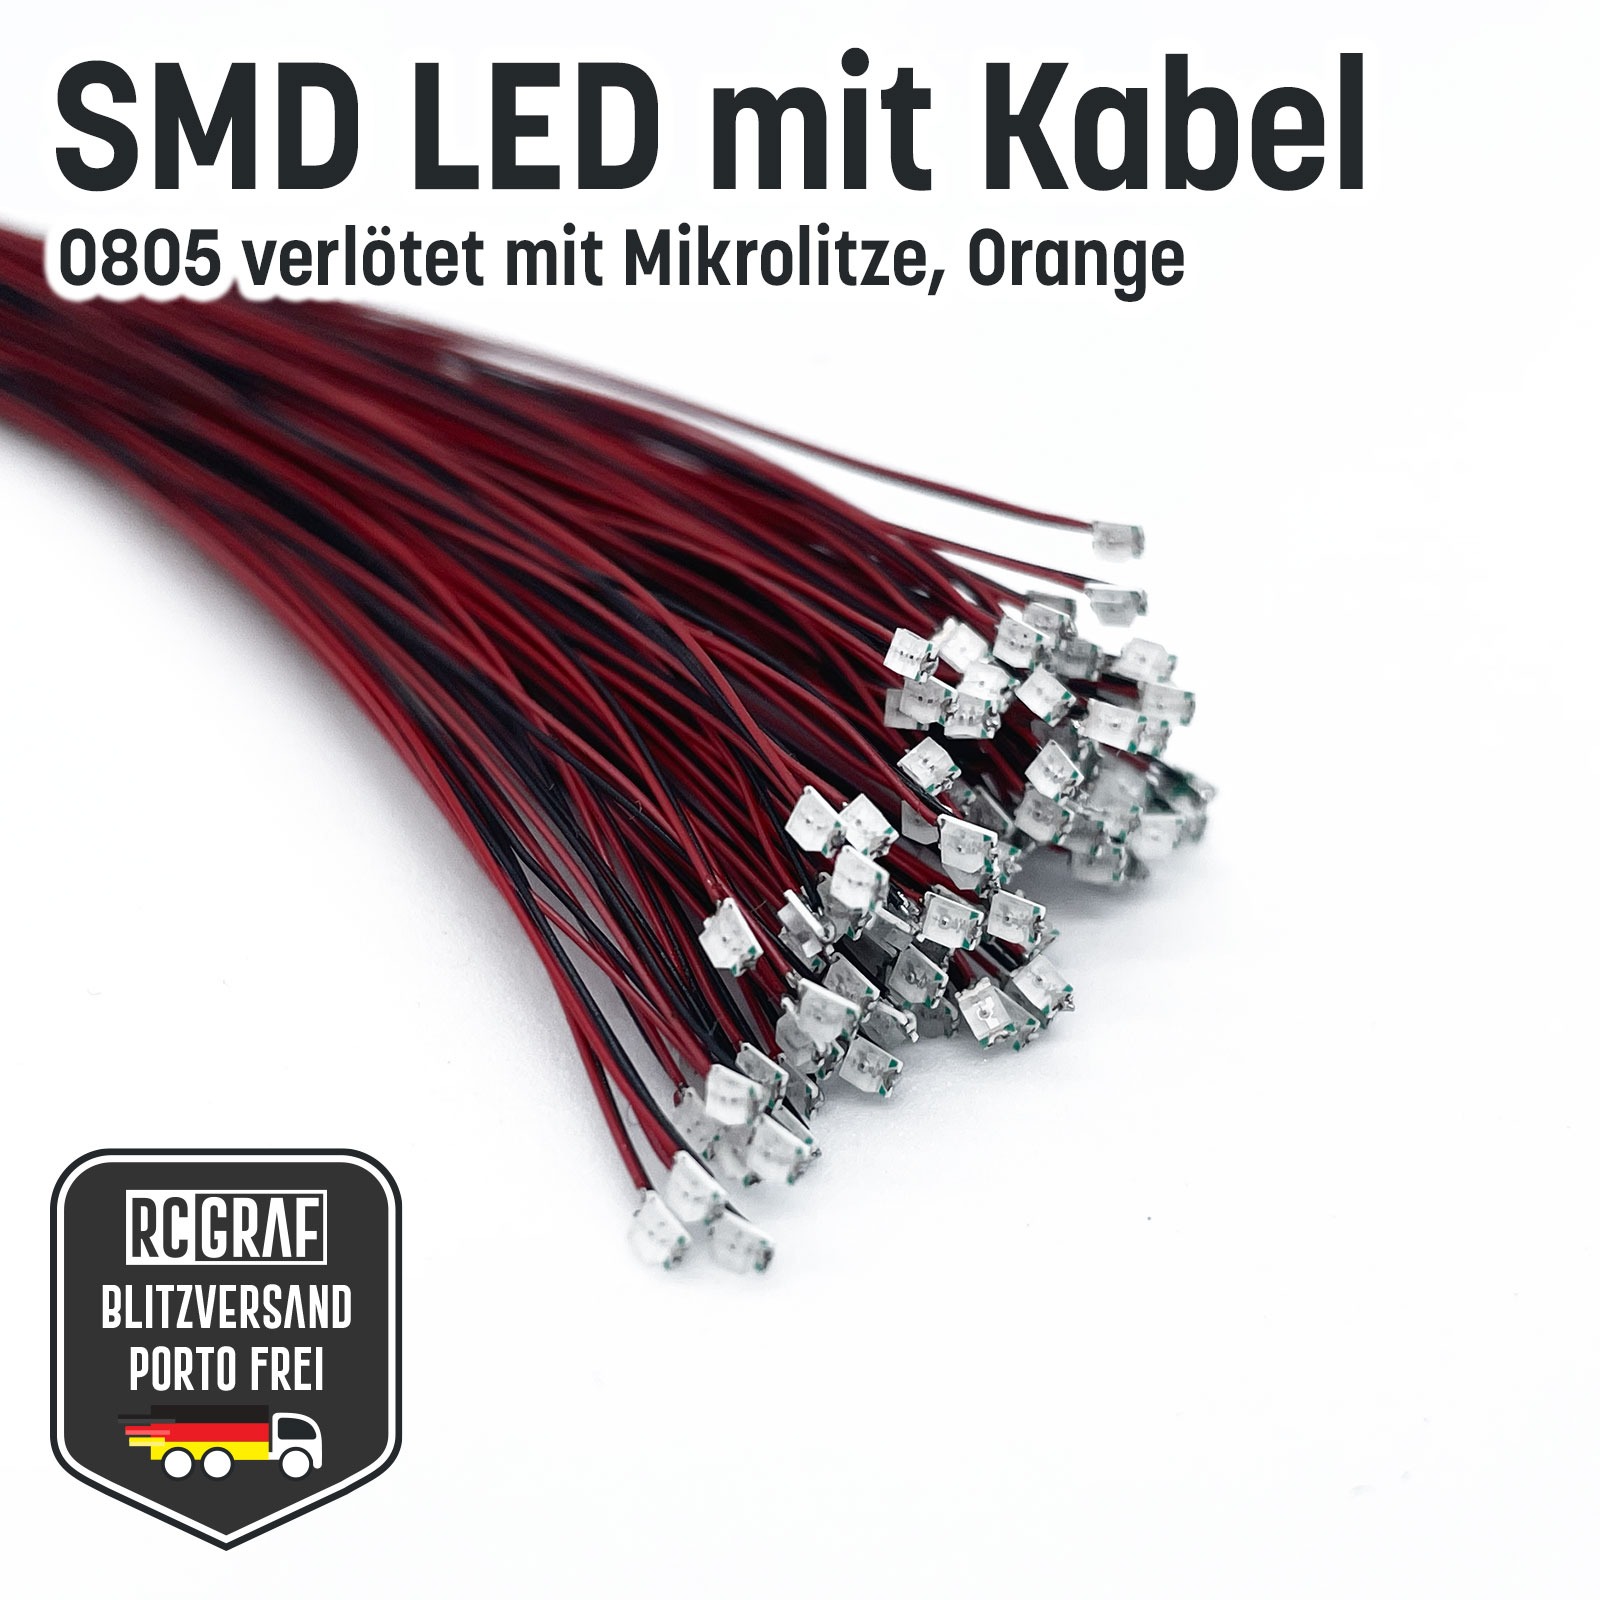 SMD LED 0805 Microlitze 30cm verlötet 5